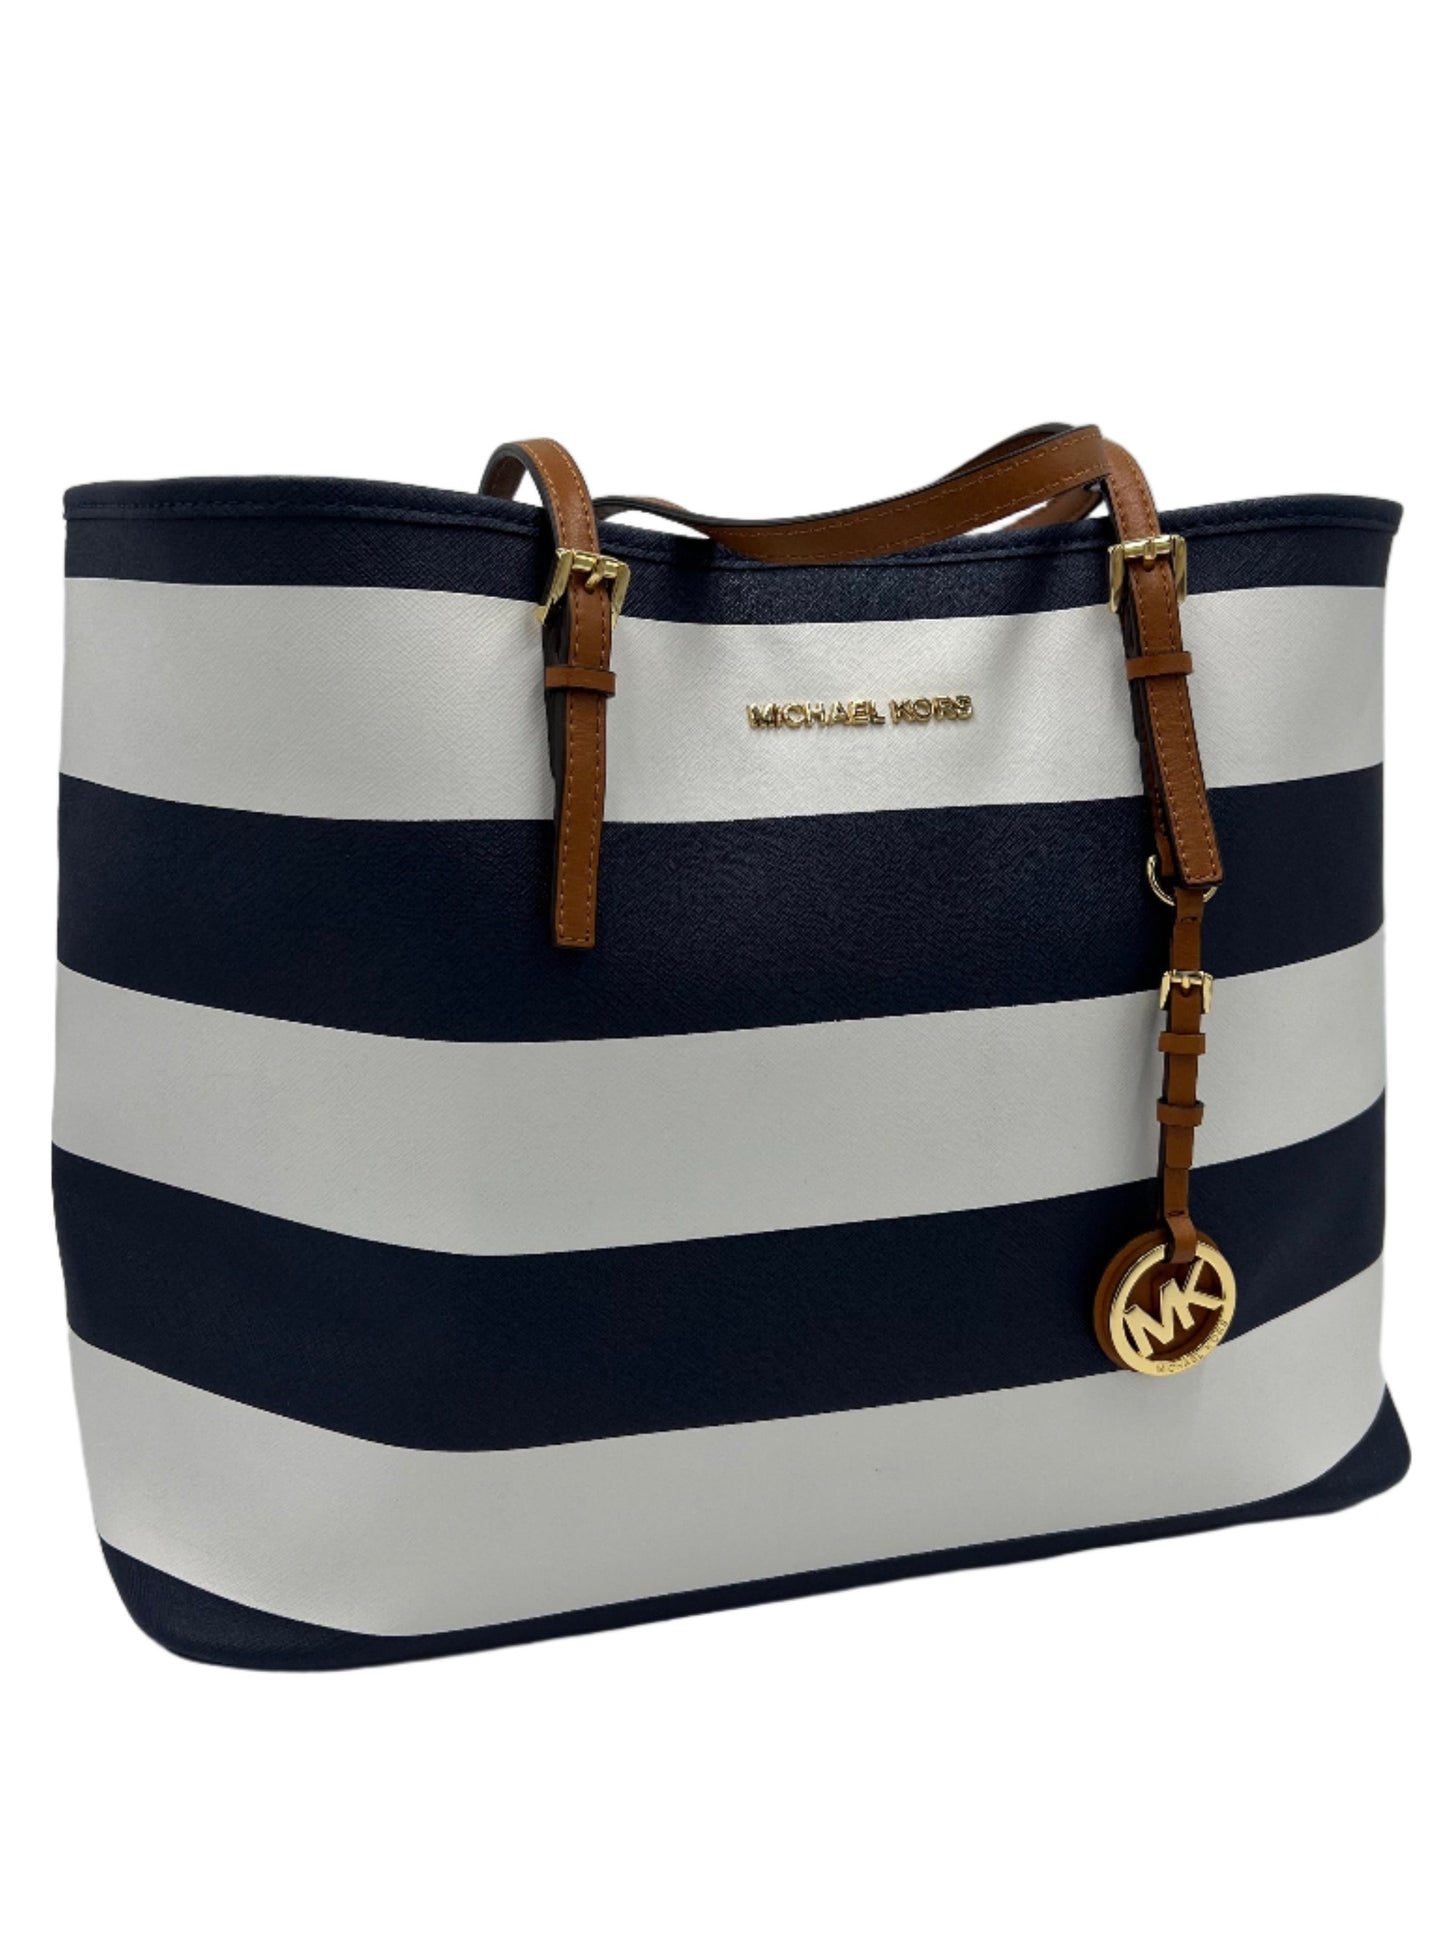 Like New! Handbag Designer By Michael Kors